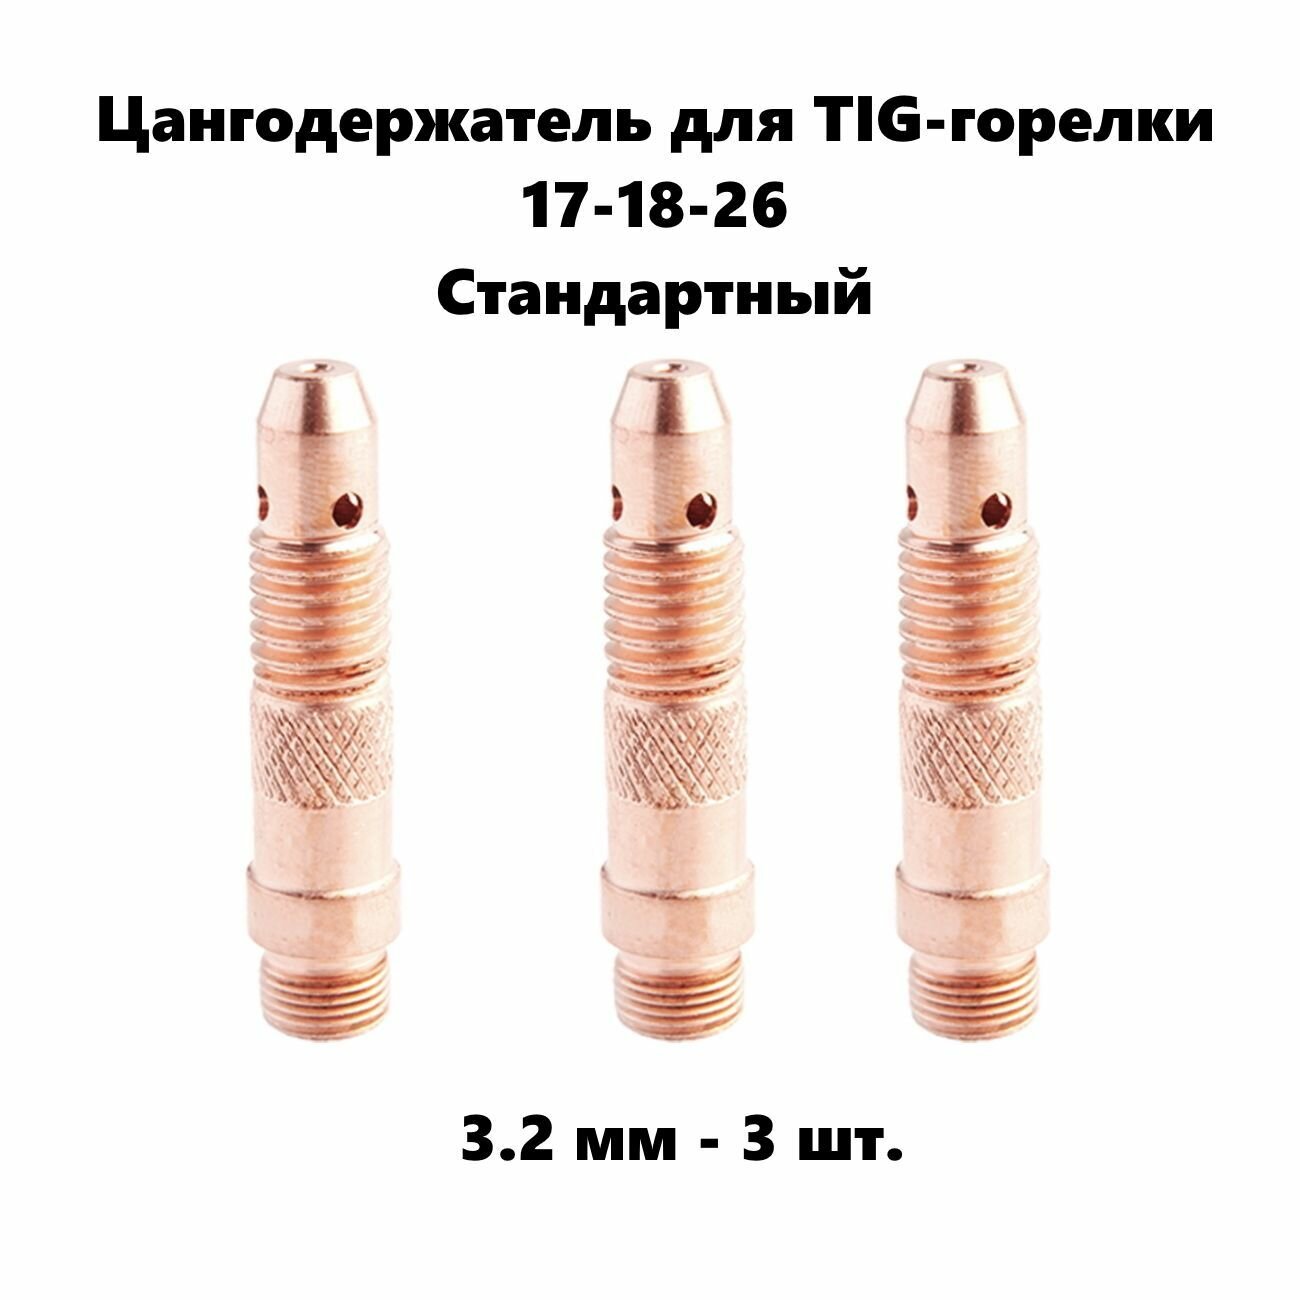 Цангодержатель 32 мм диаметр 3 шт. для Tig горелки 17-18-26 стандартный